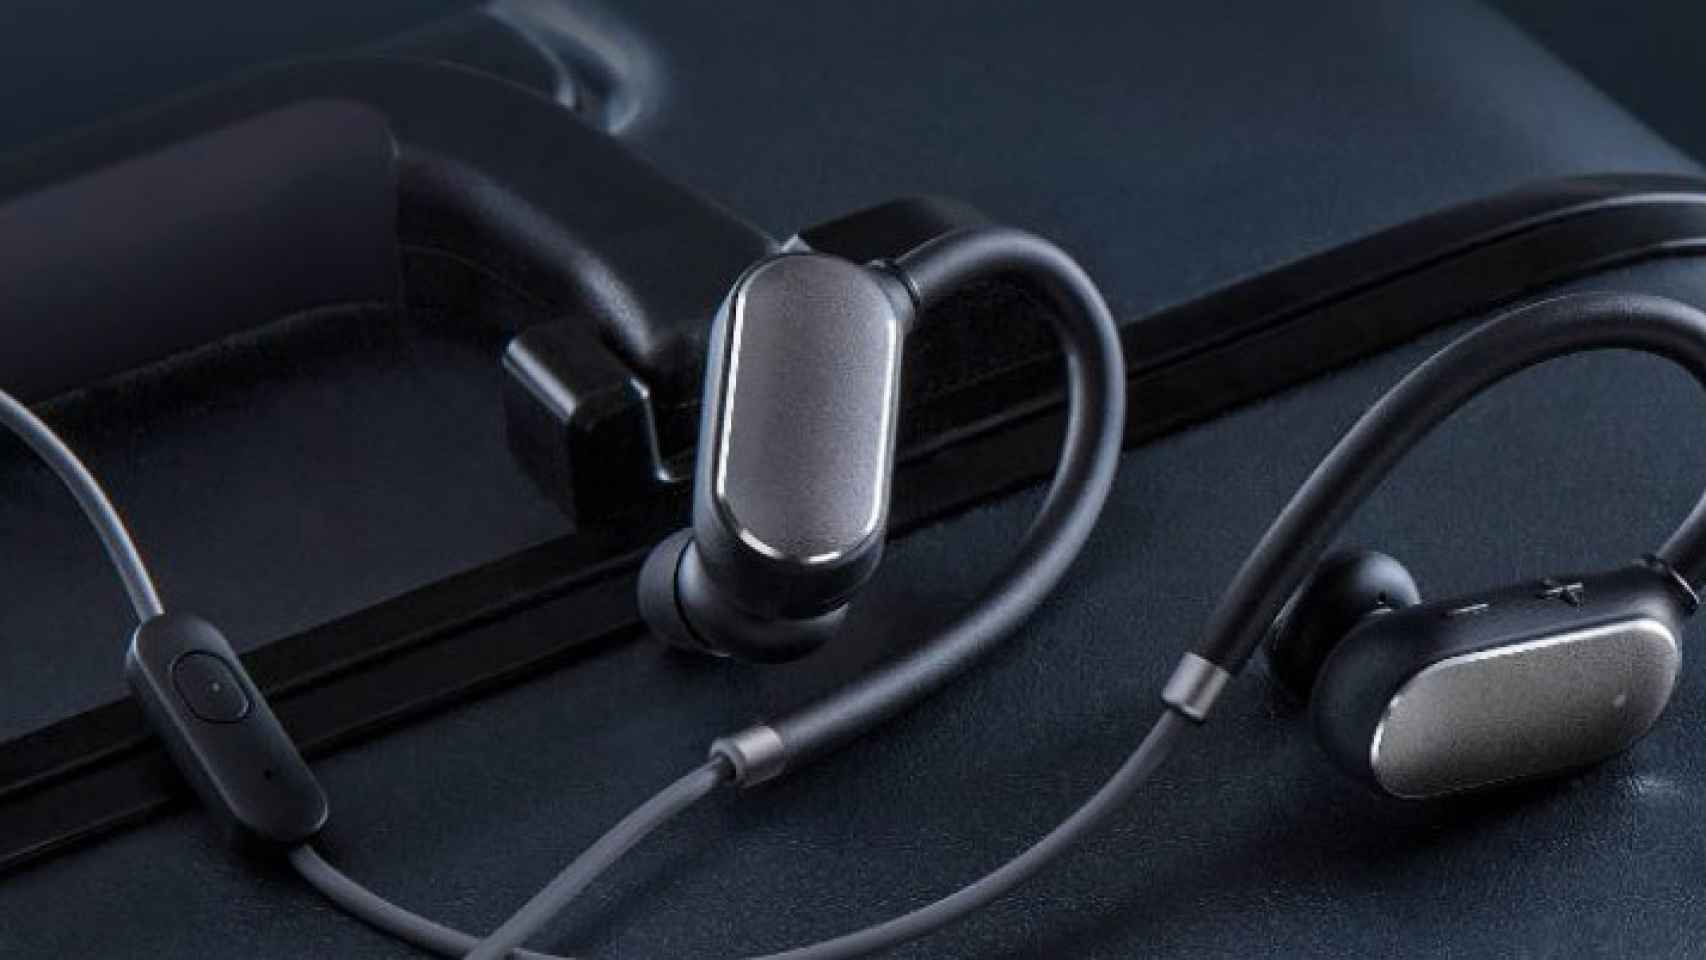 Los nuevos auriculares Xiaomi Mi Sports Bluetooth son baratos y resistentes al agua